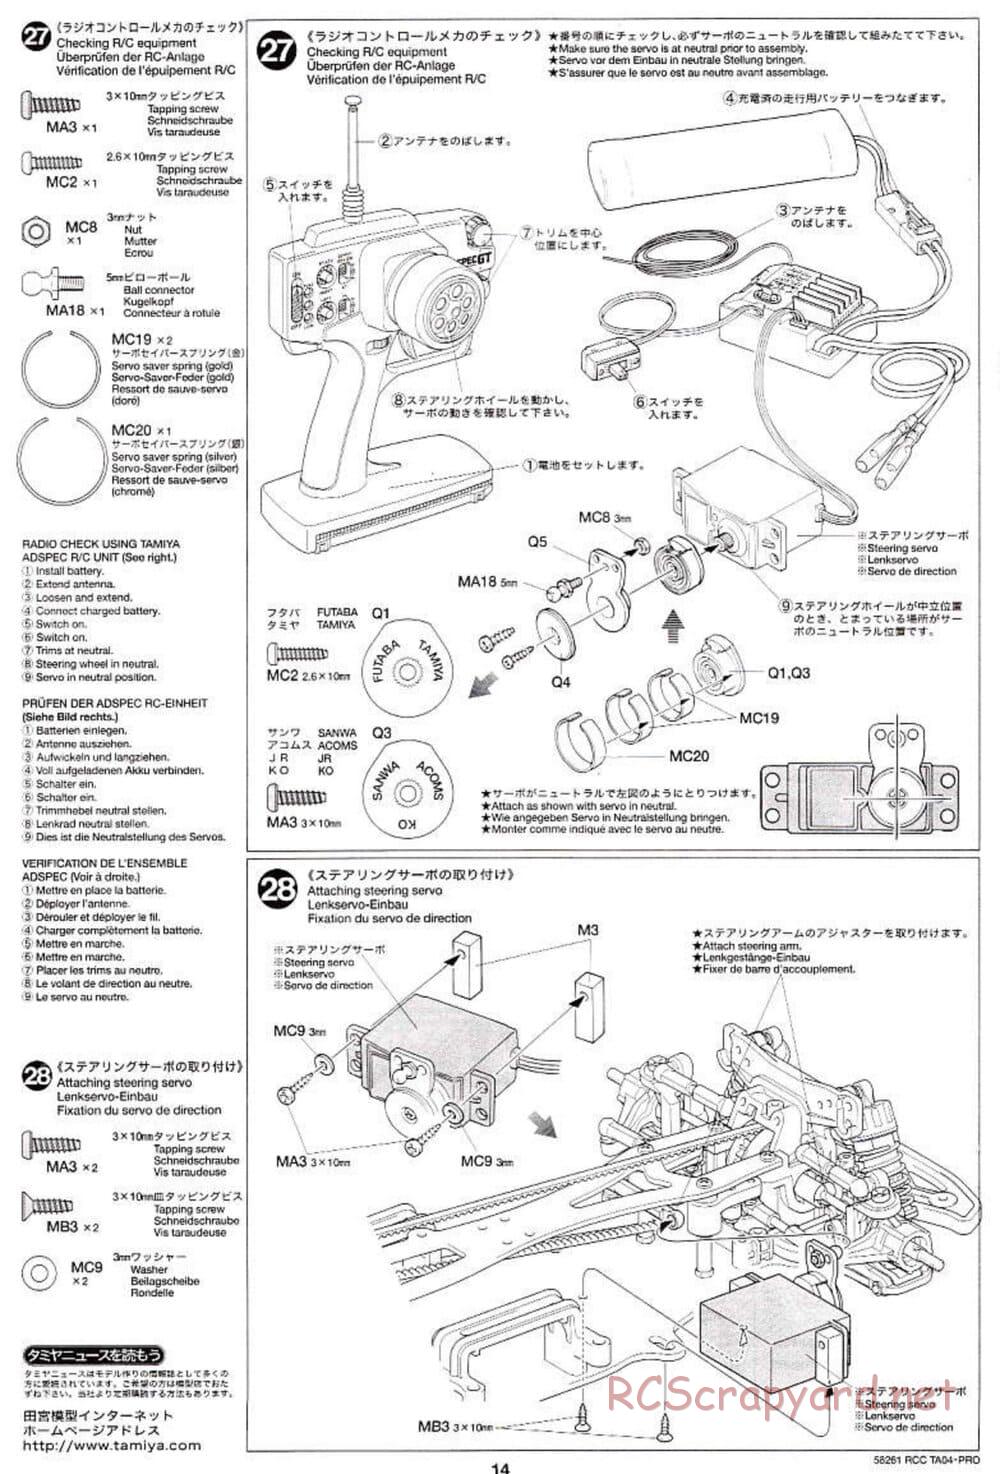 Tamiya - TA-04 Pro Chassis - Manual - Page 14